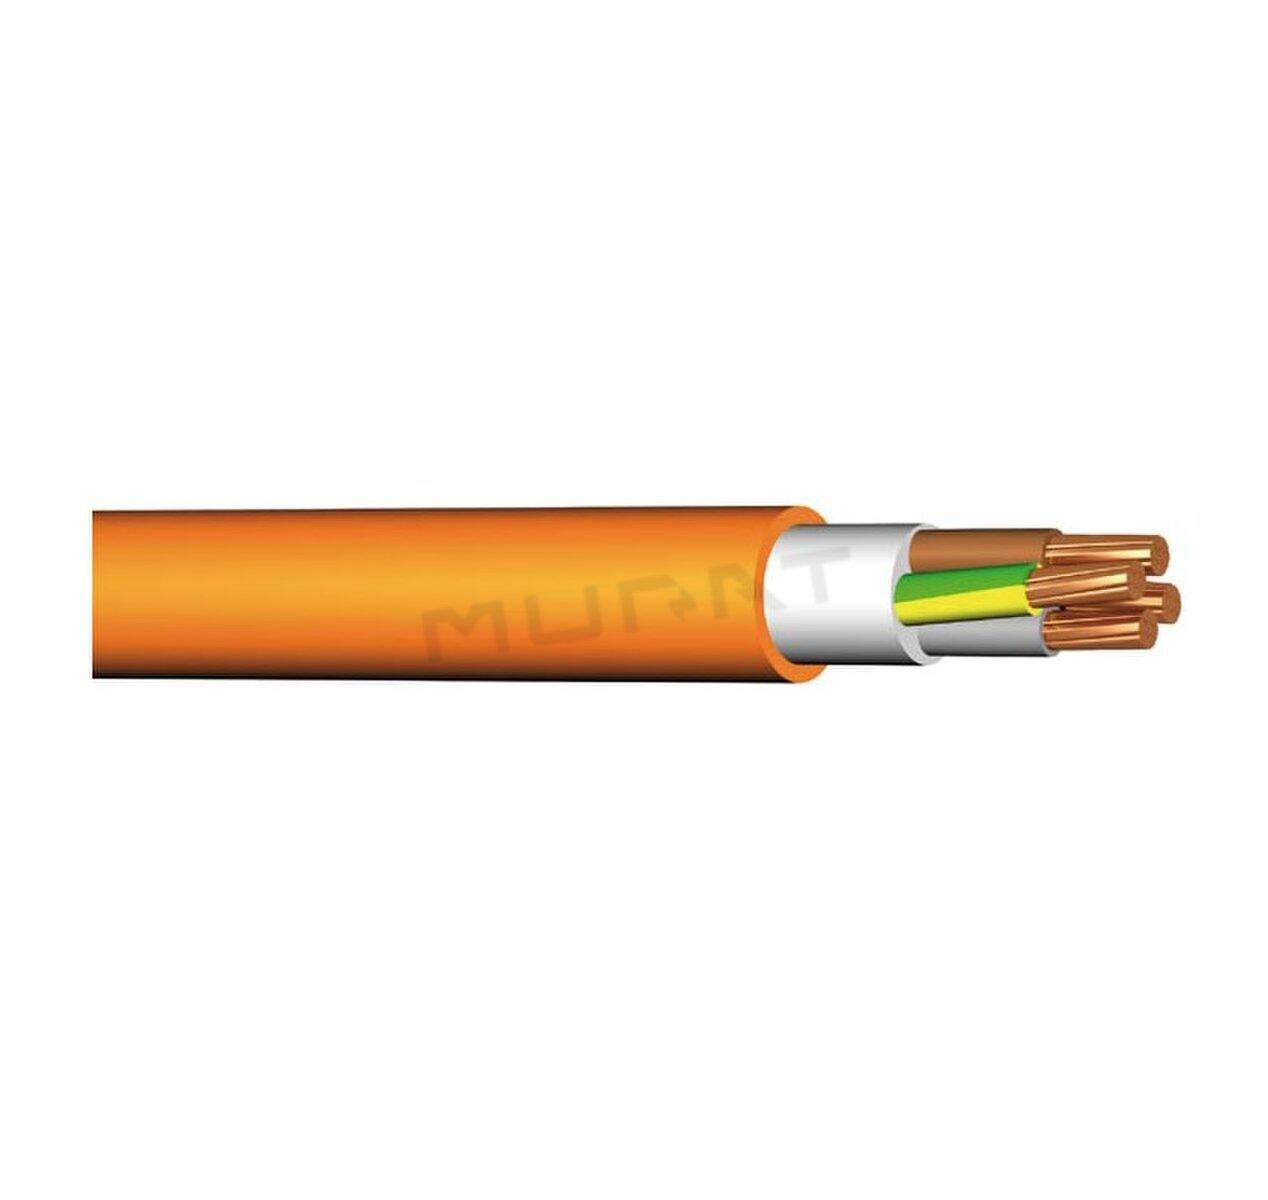 Kábel PRAFlaSafe +X-J 5x10 mm2 RE 1–CXKH–R+B2ca s1d1a1